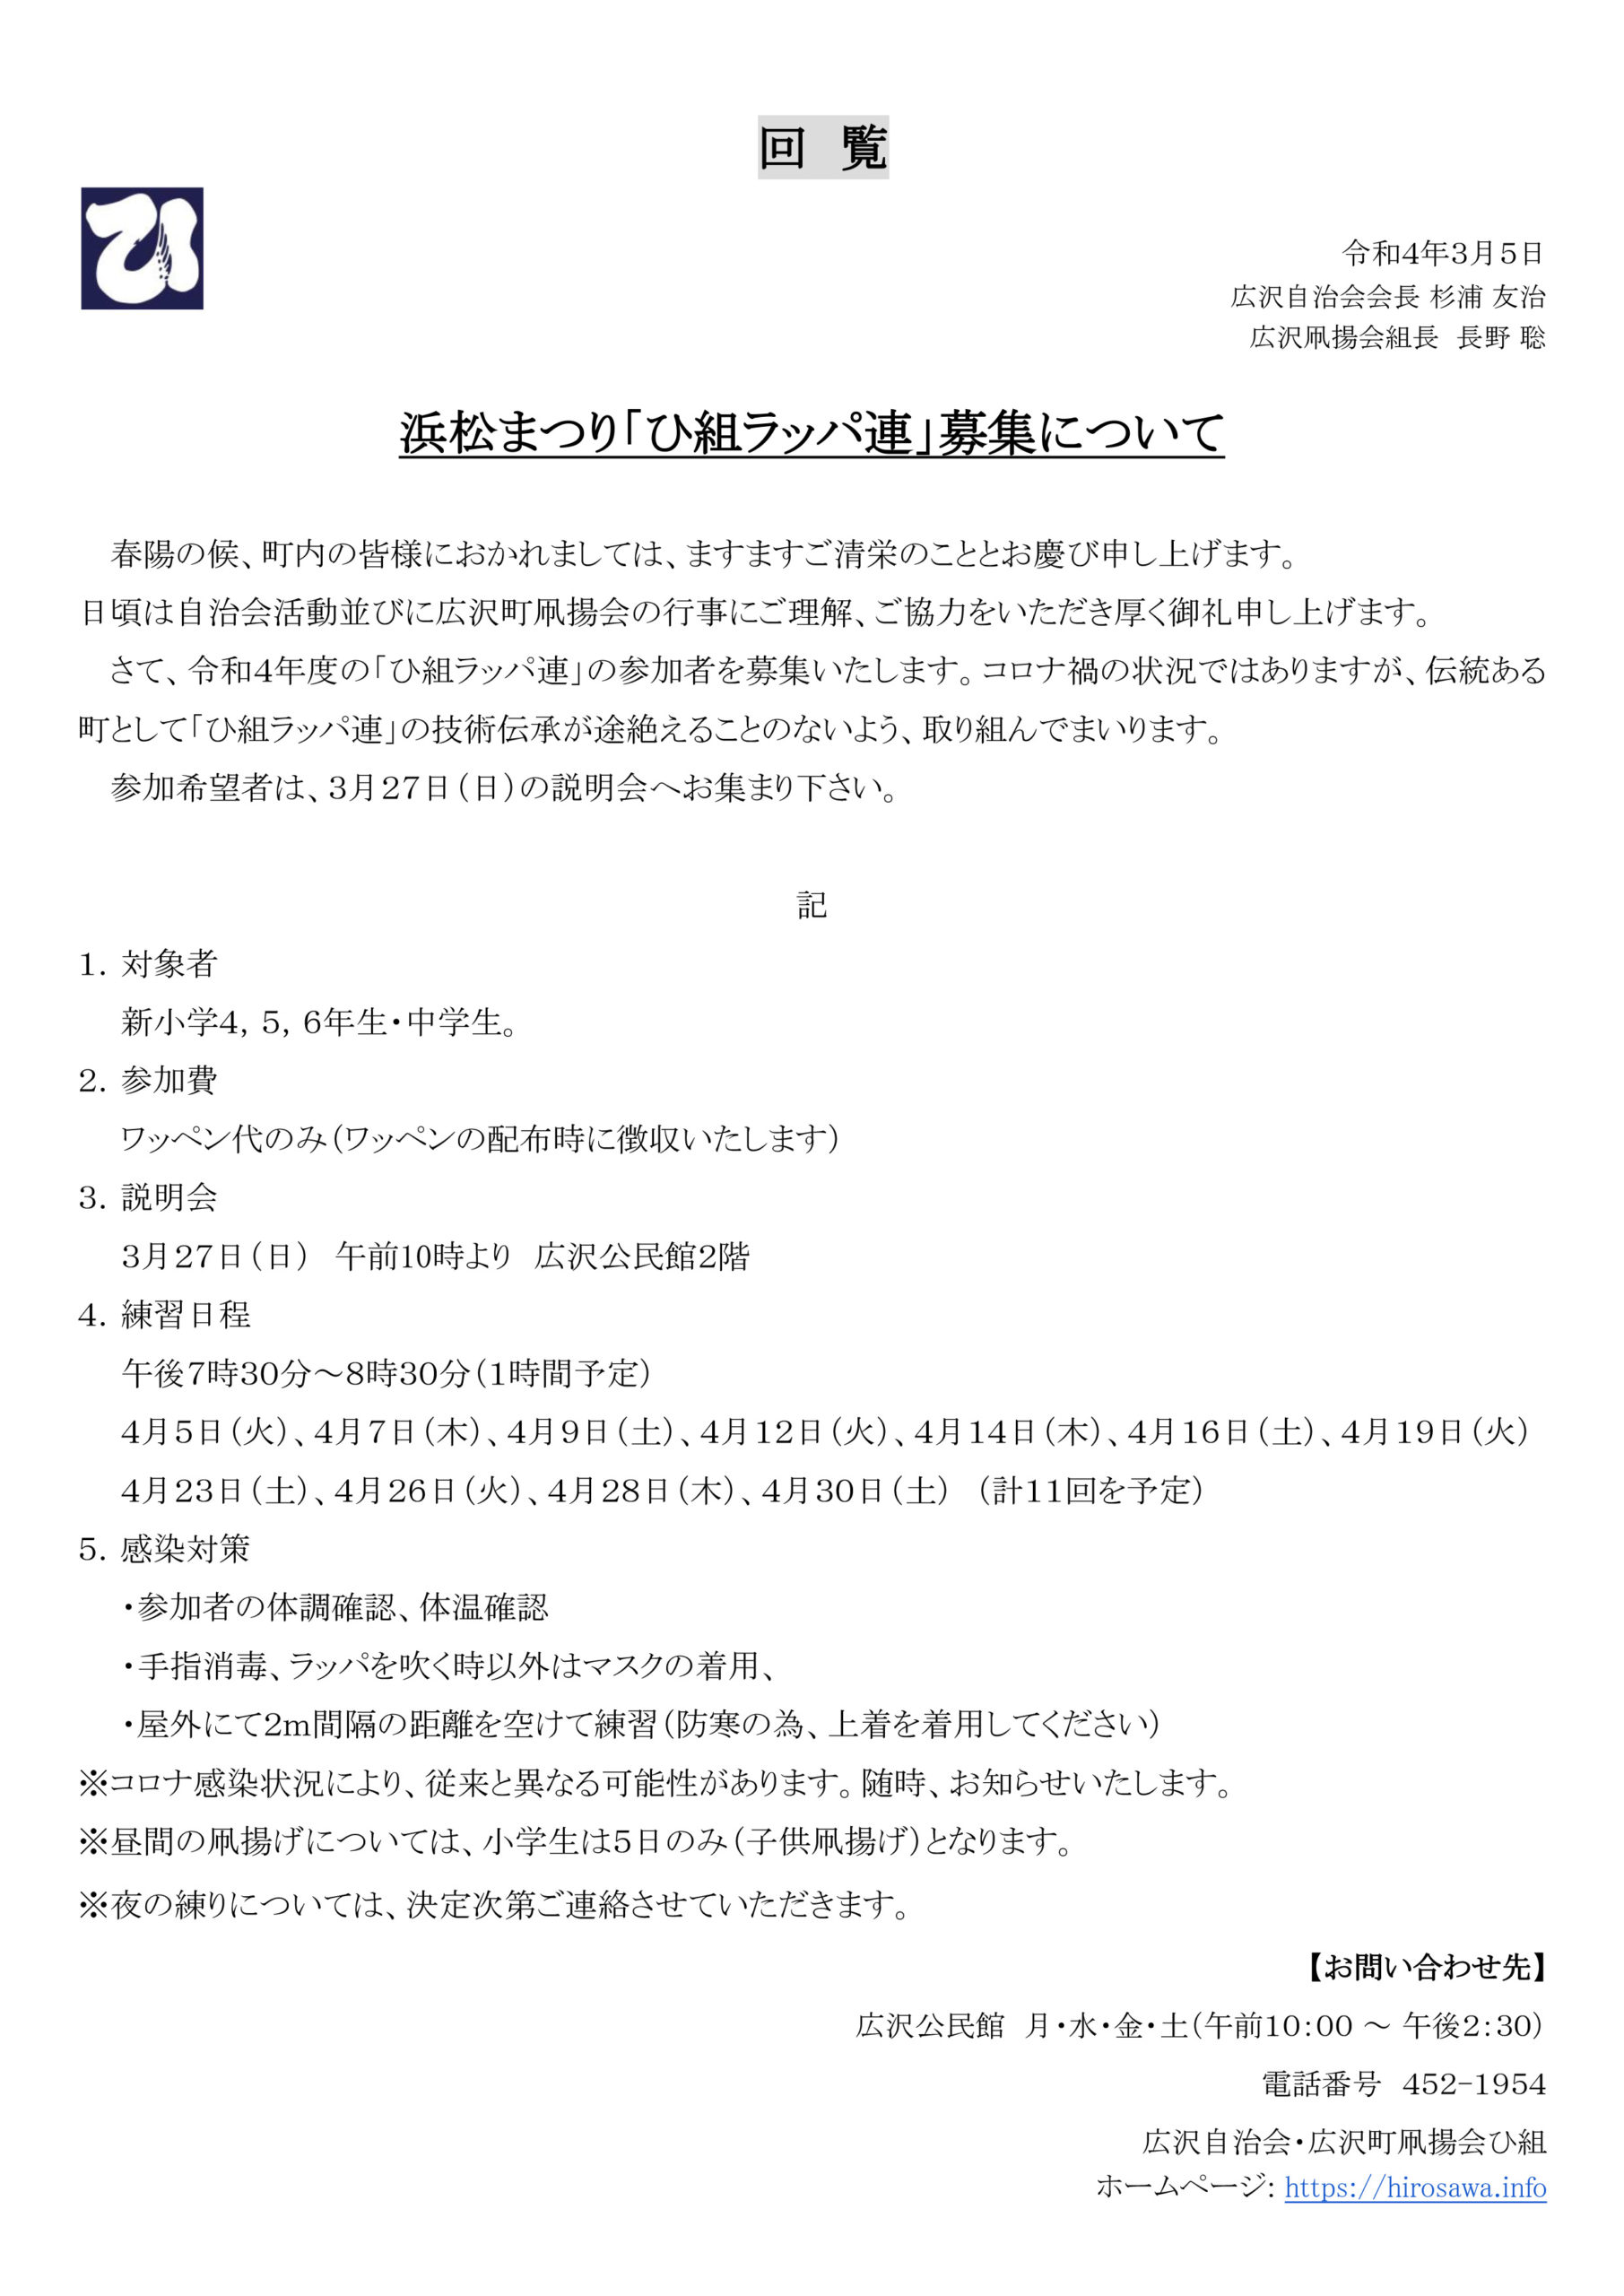 【回覧資料 令和4年3月5日】浜松まつり「ひ組ラッパ連」募集について